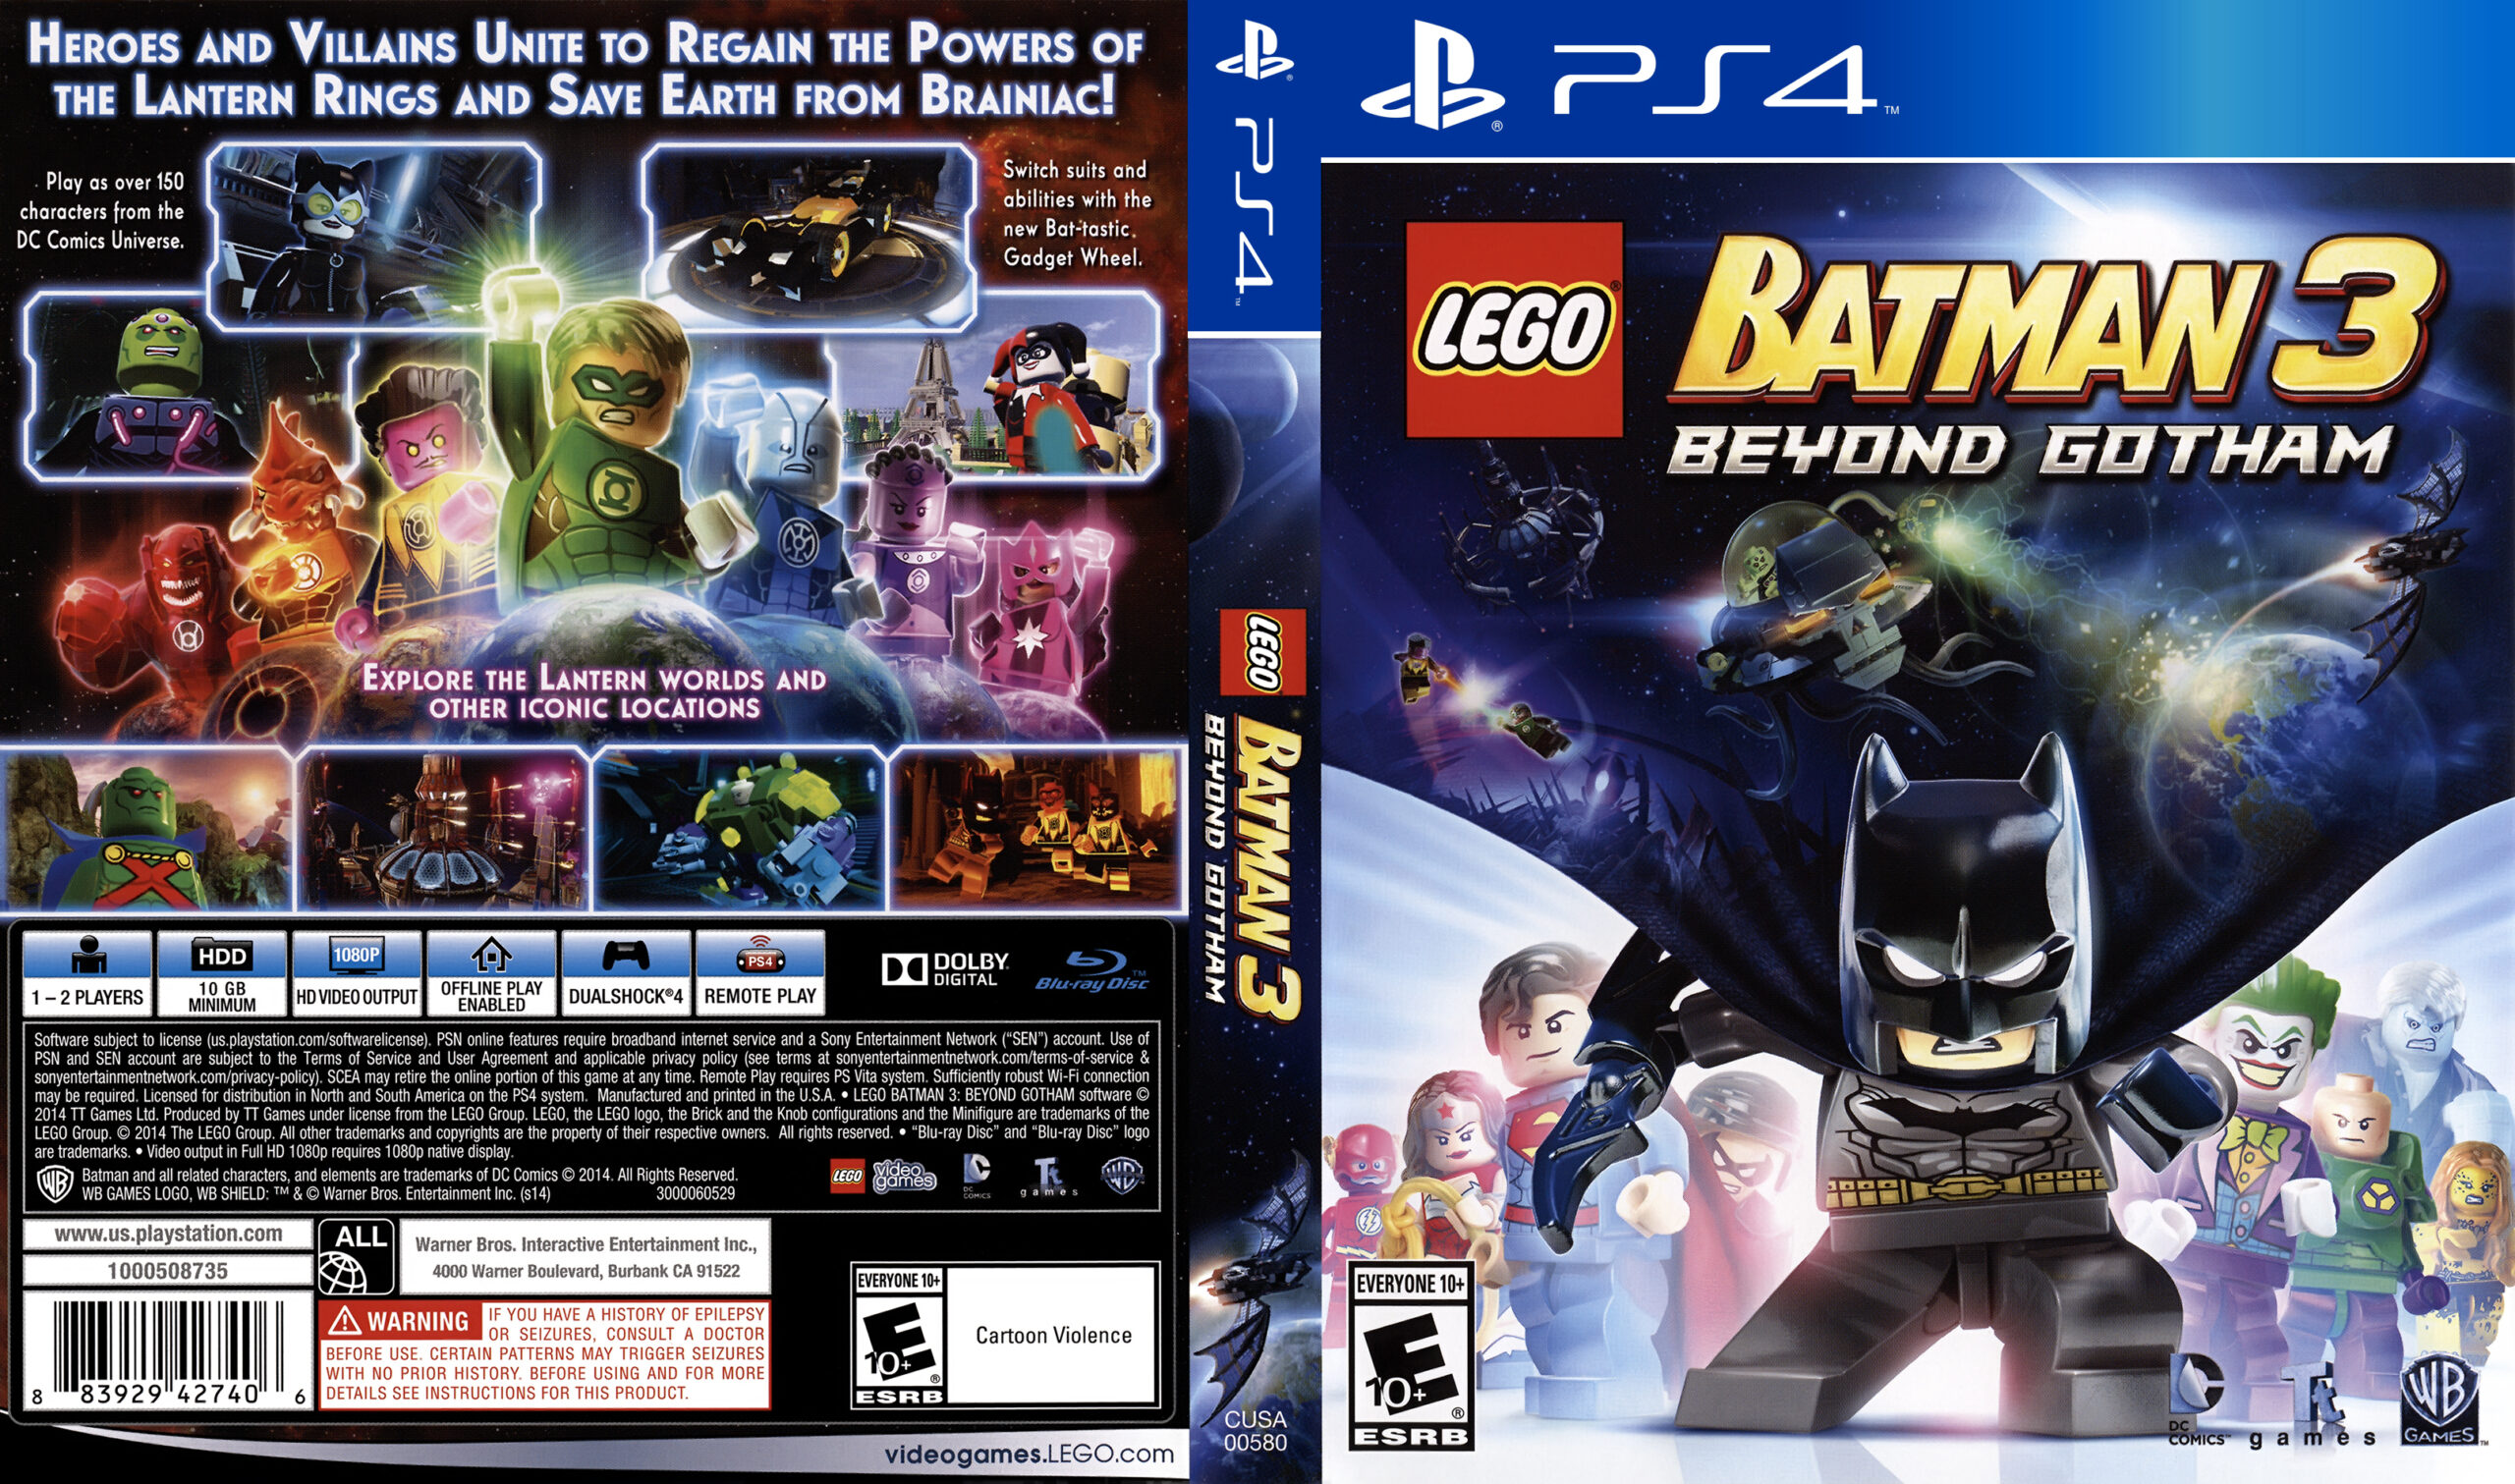 Lego-Batman-3-Beyond-Gotham-scaled.jpg